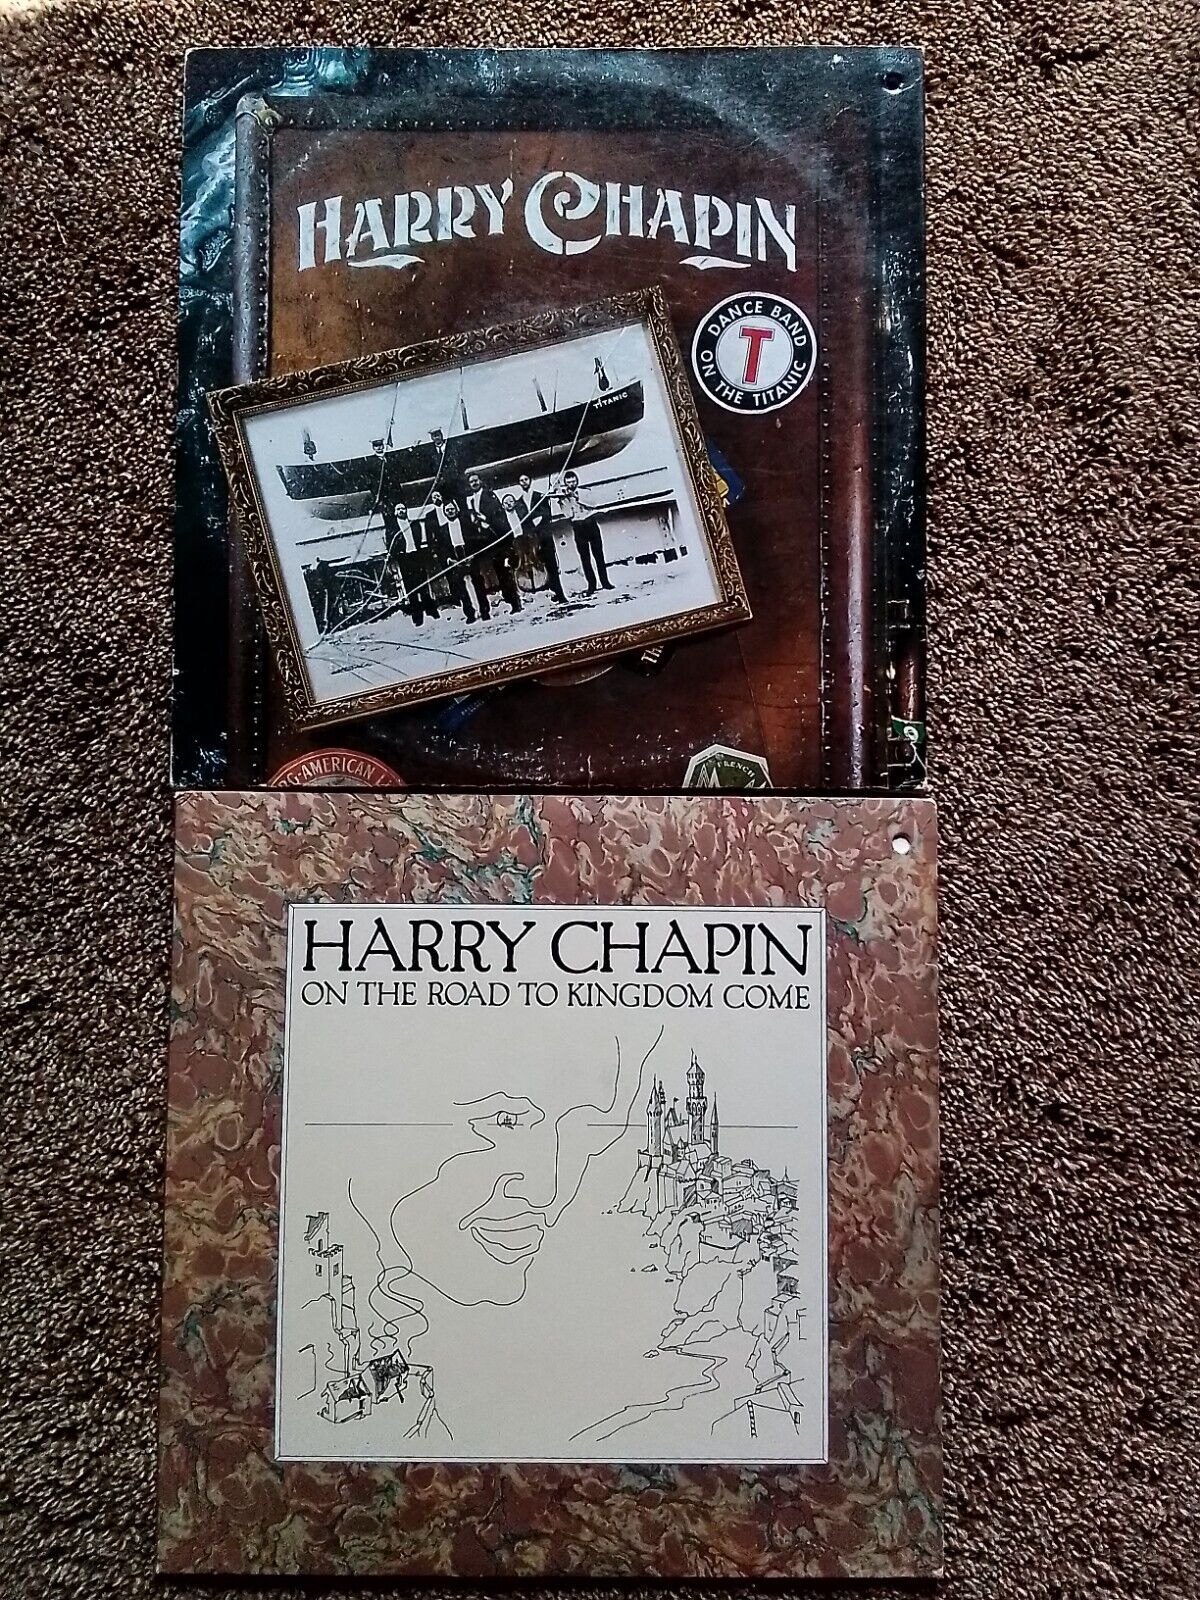 TWO VINTAGE HARRY CHAPIN VINYL RECORD ALBUM